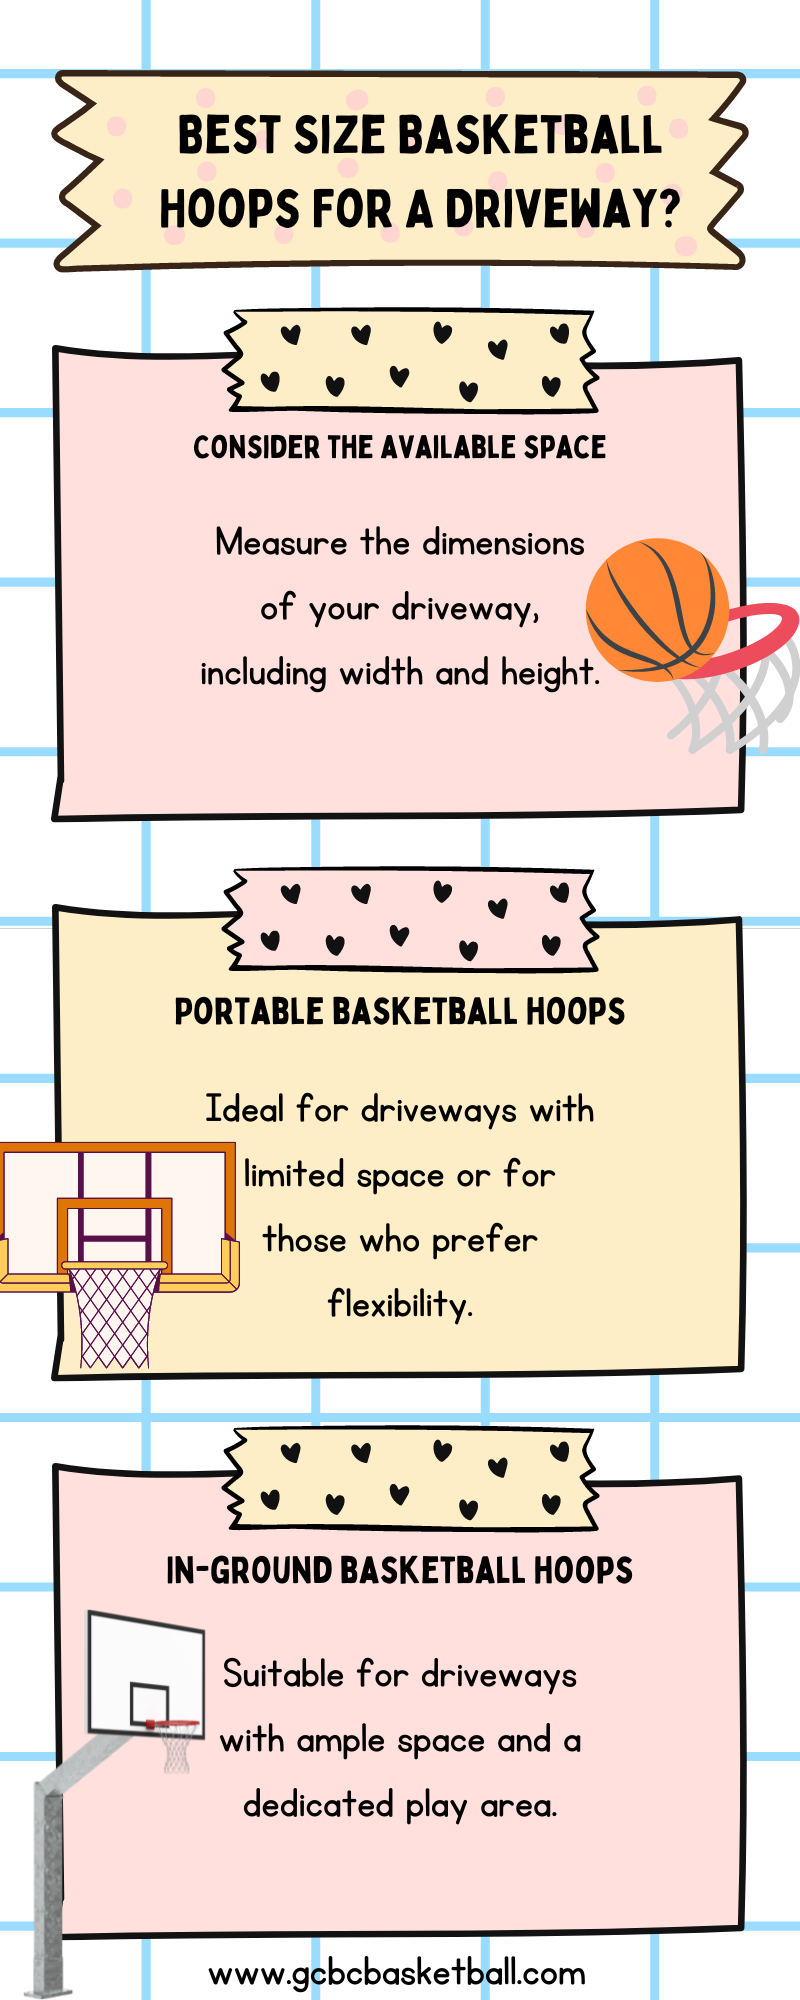 Adjustable basketball hoops